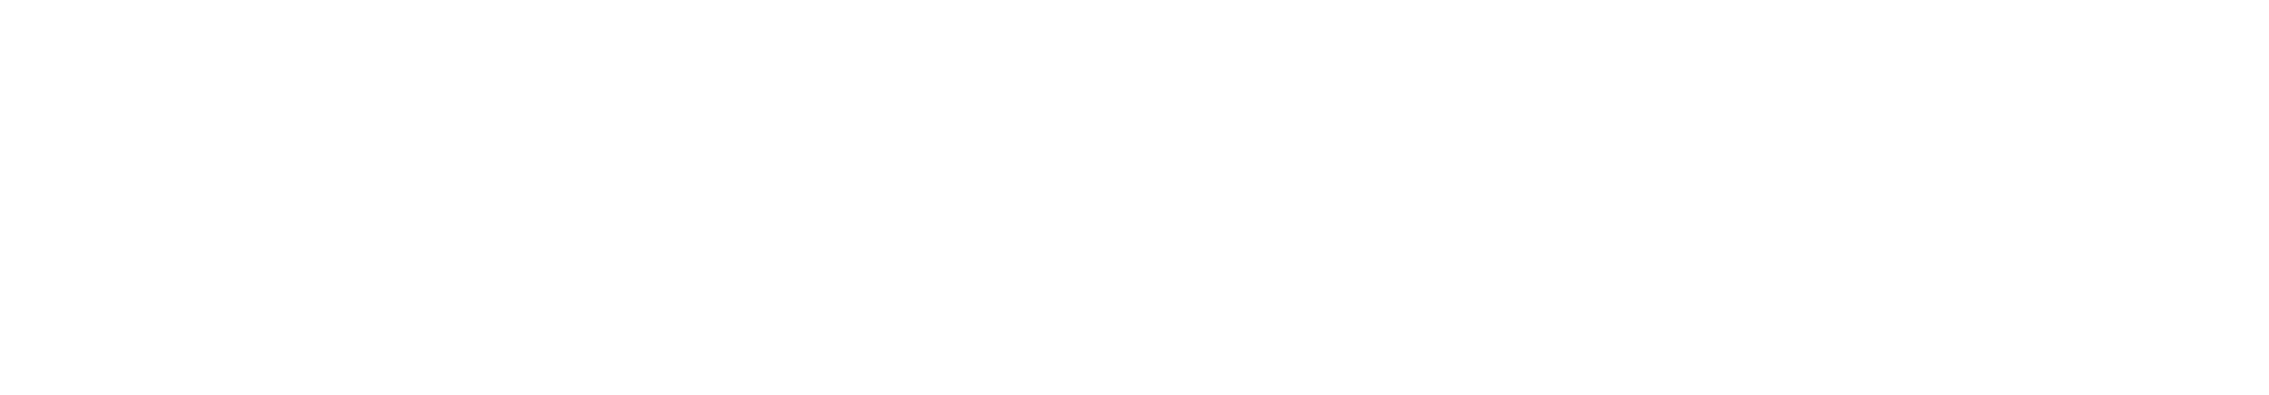 Pershing-new-logo-01-1